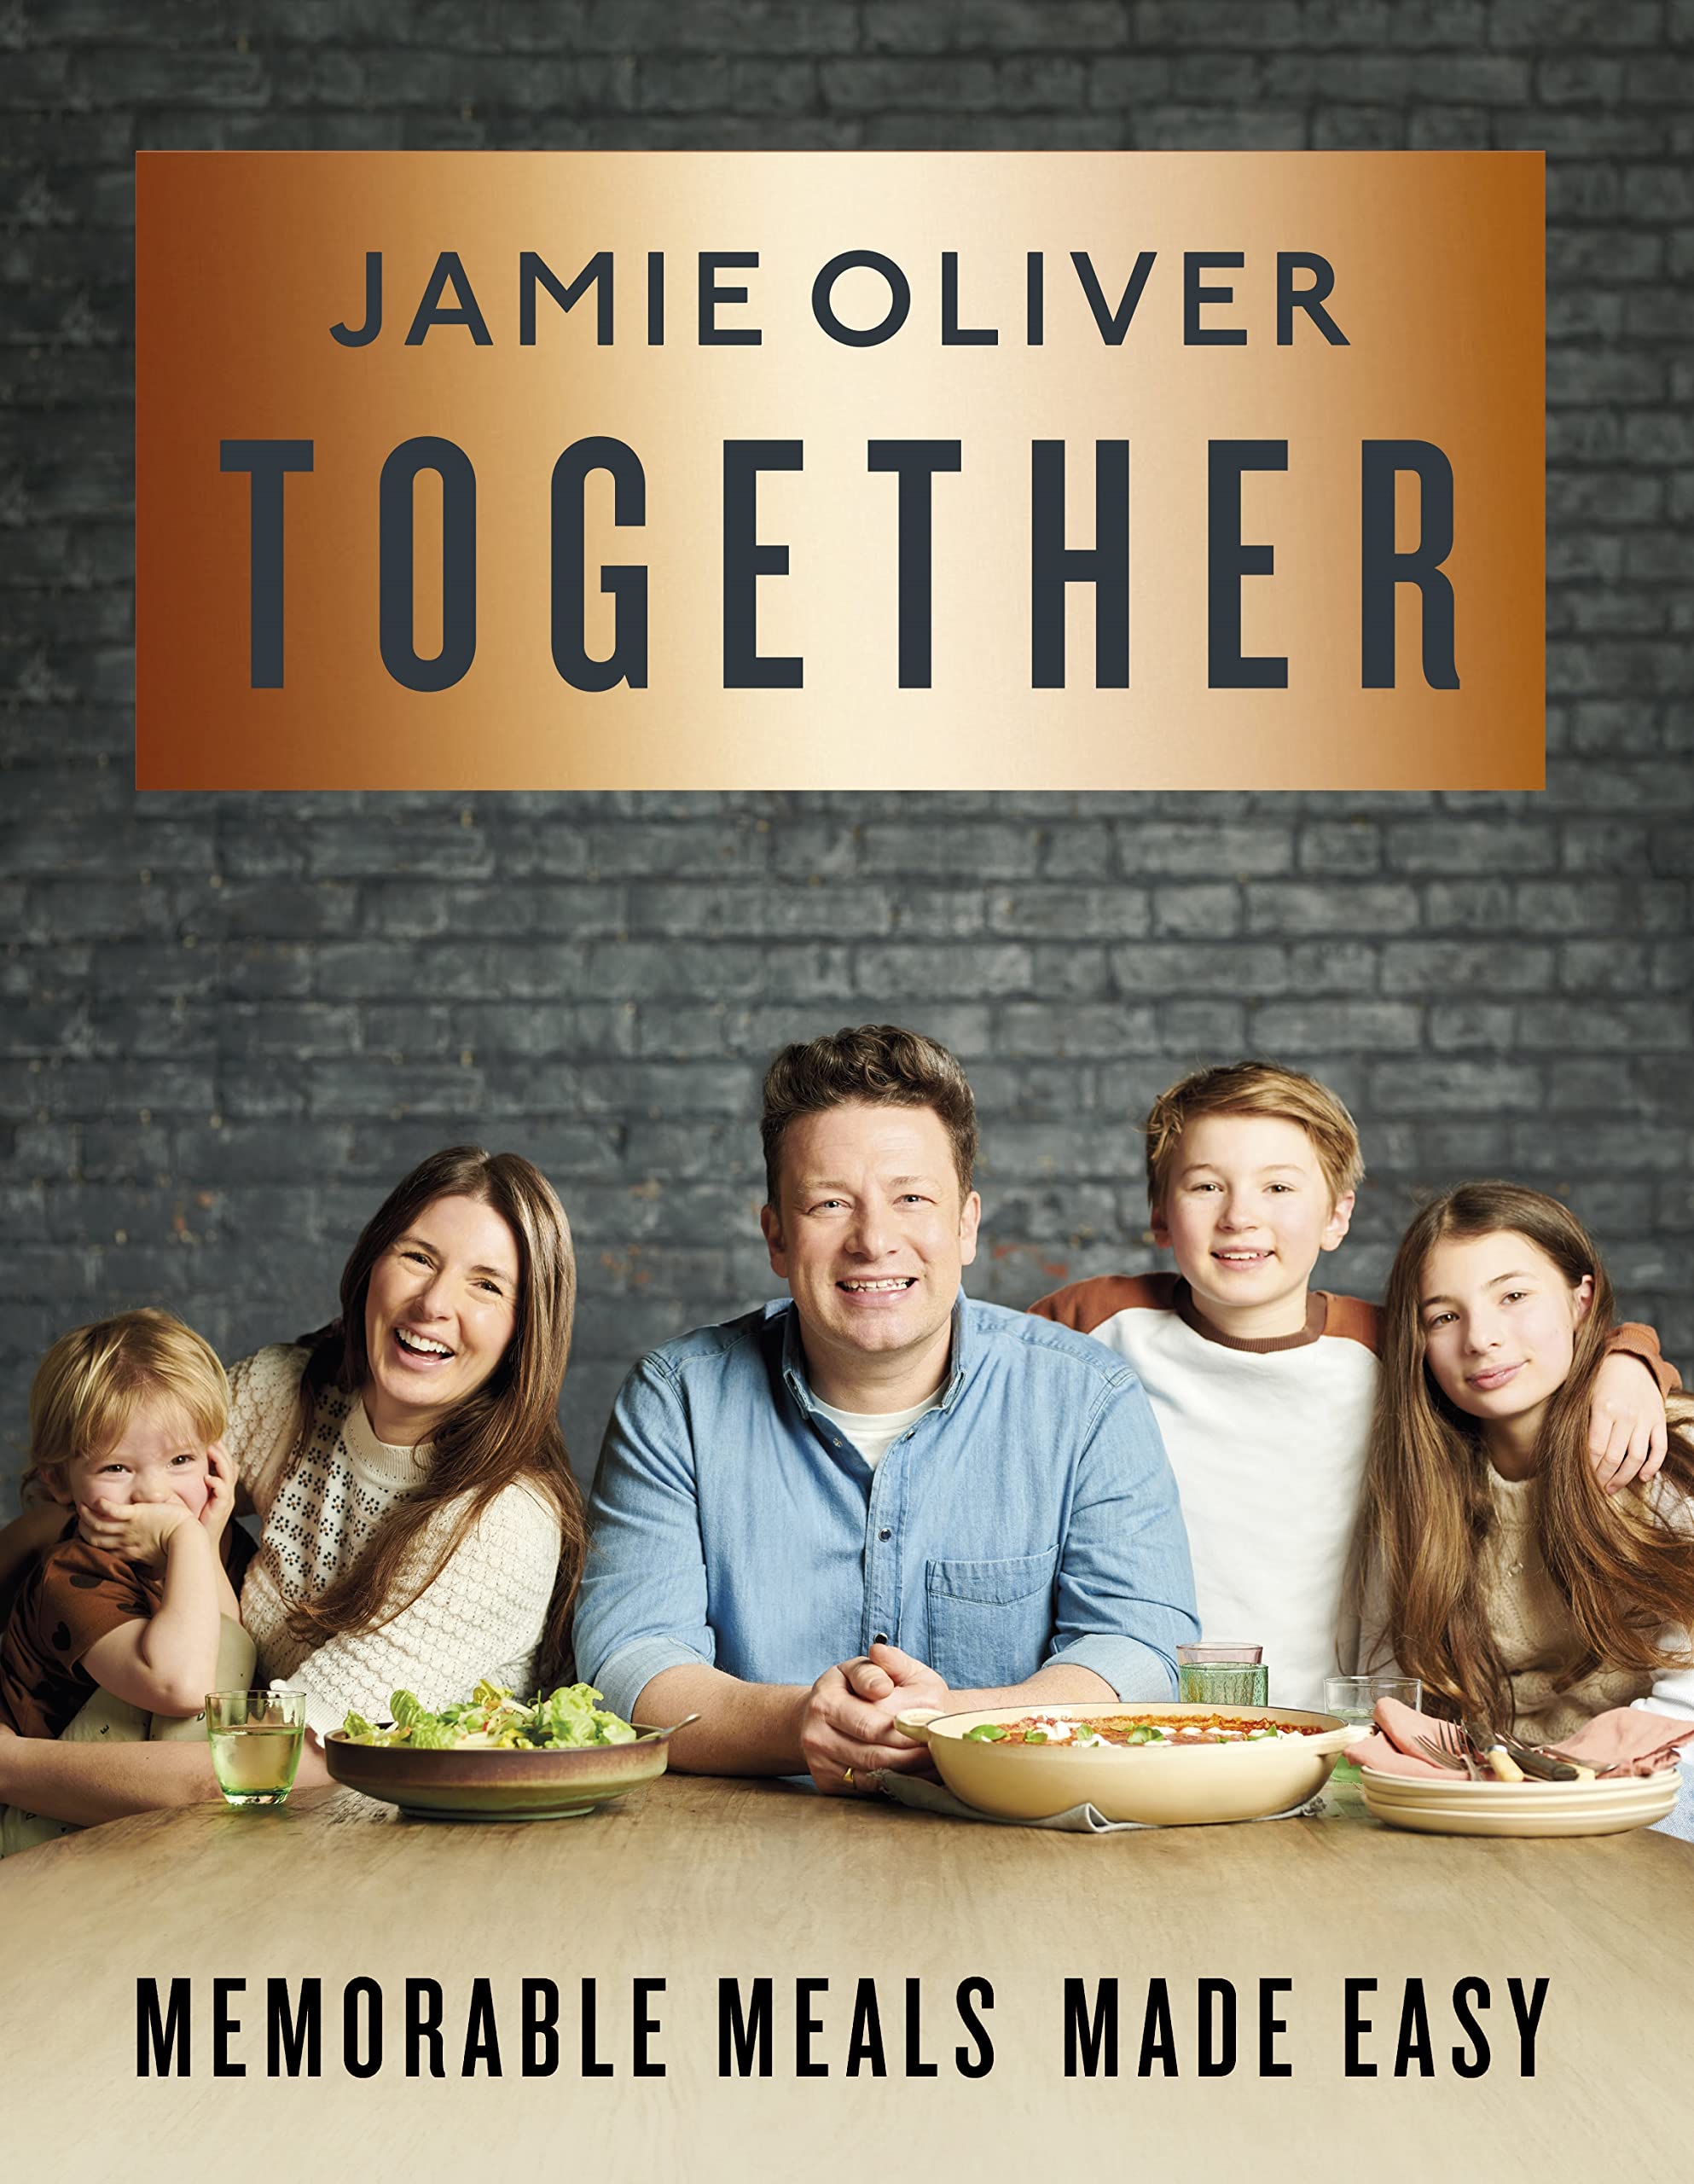 Jamie Oliver's newest cookbook called Together